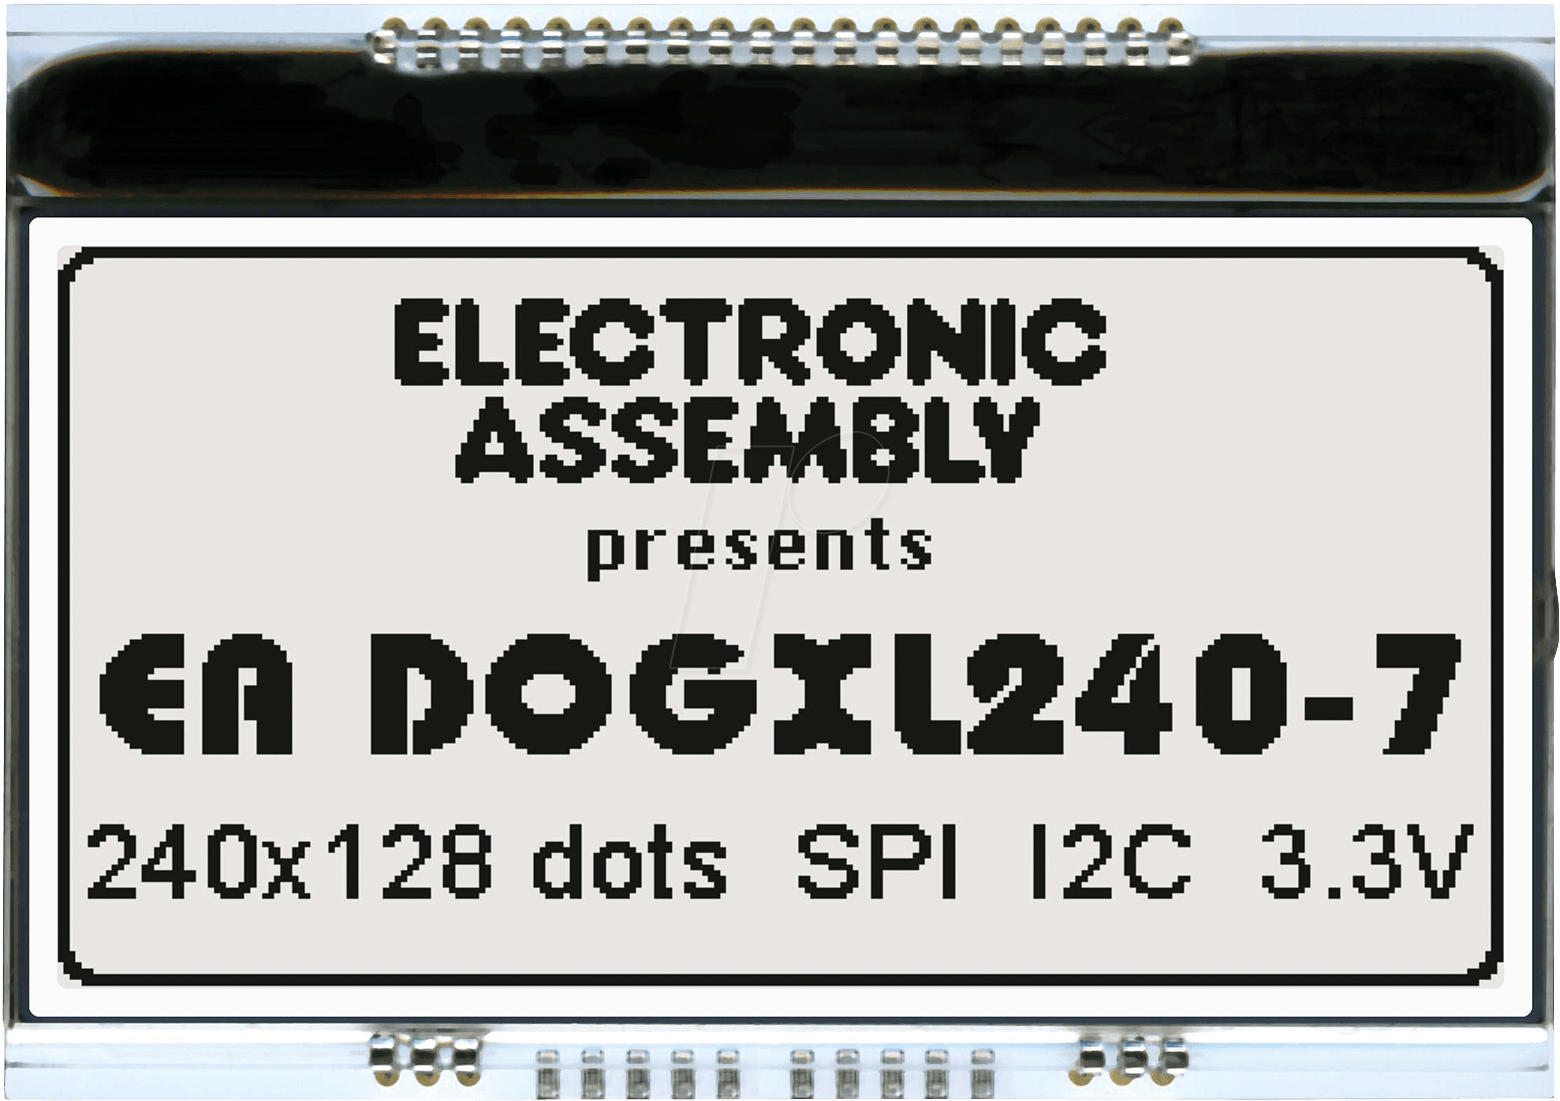 EA DOGXL240N-7 - Grafikmodul mit Display-RAM, 84 x 42,9 mm, 240 x 128 Dots weiß von DISPLAY VISIONS